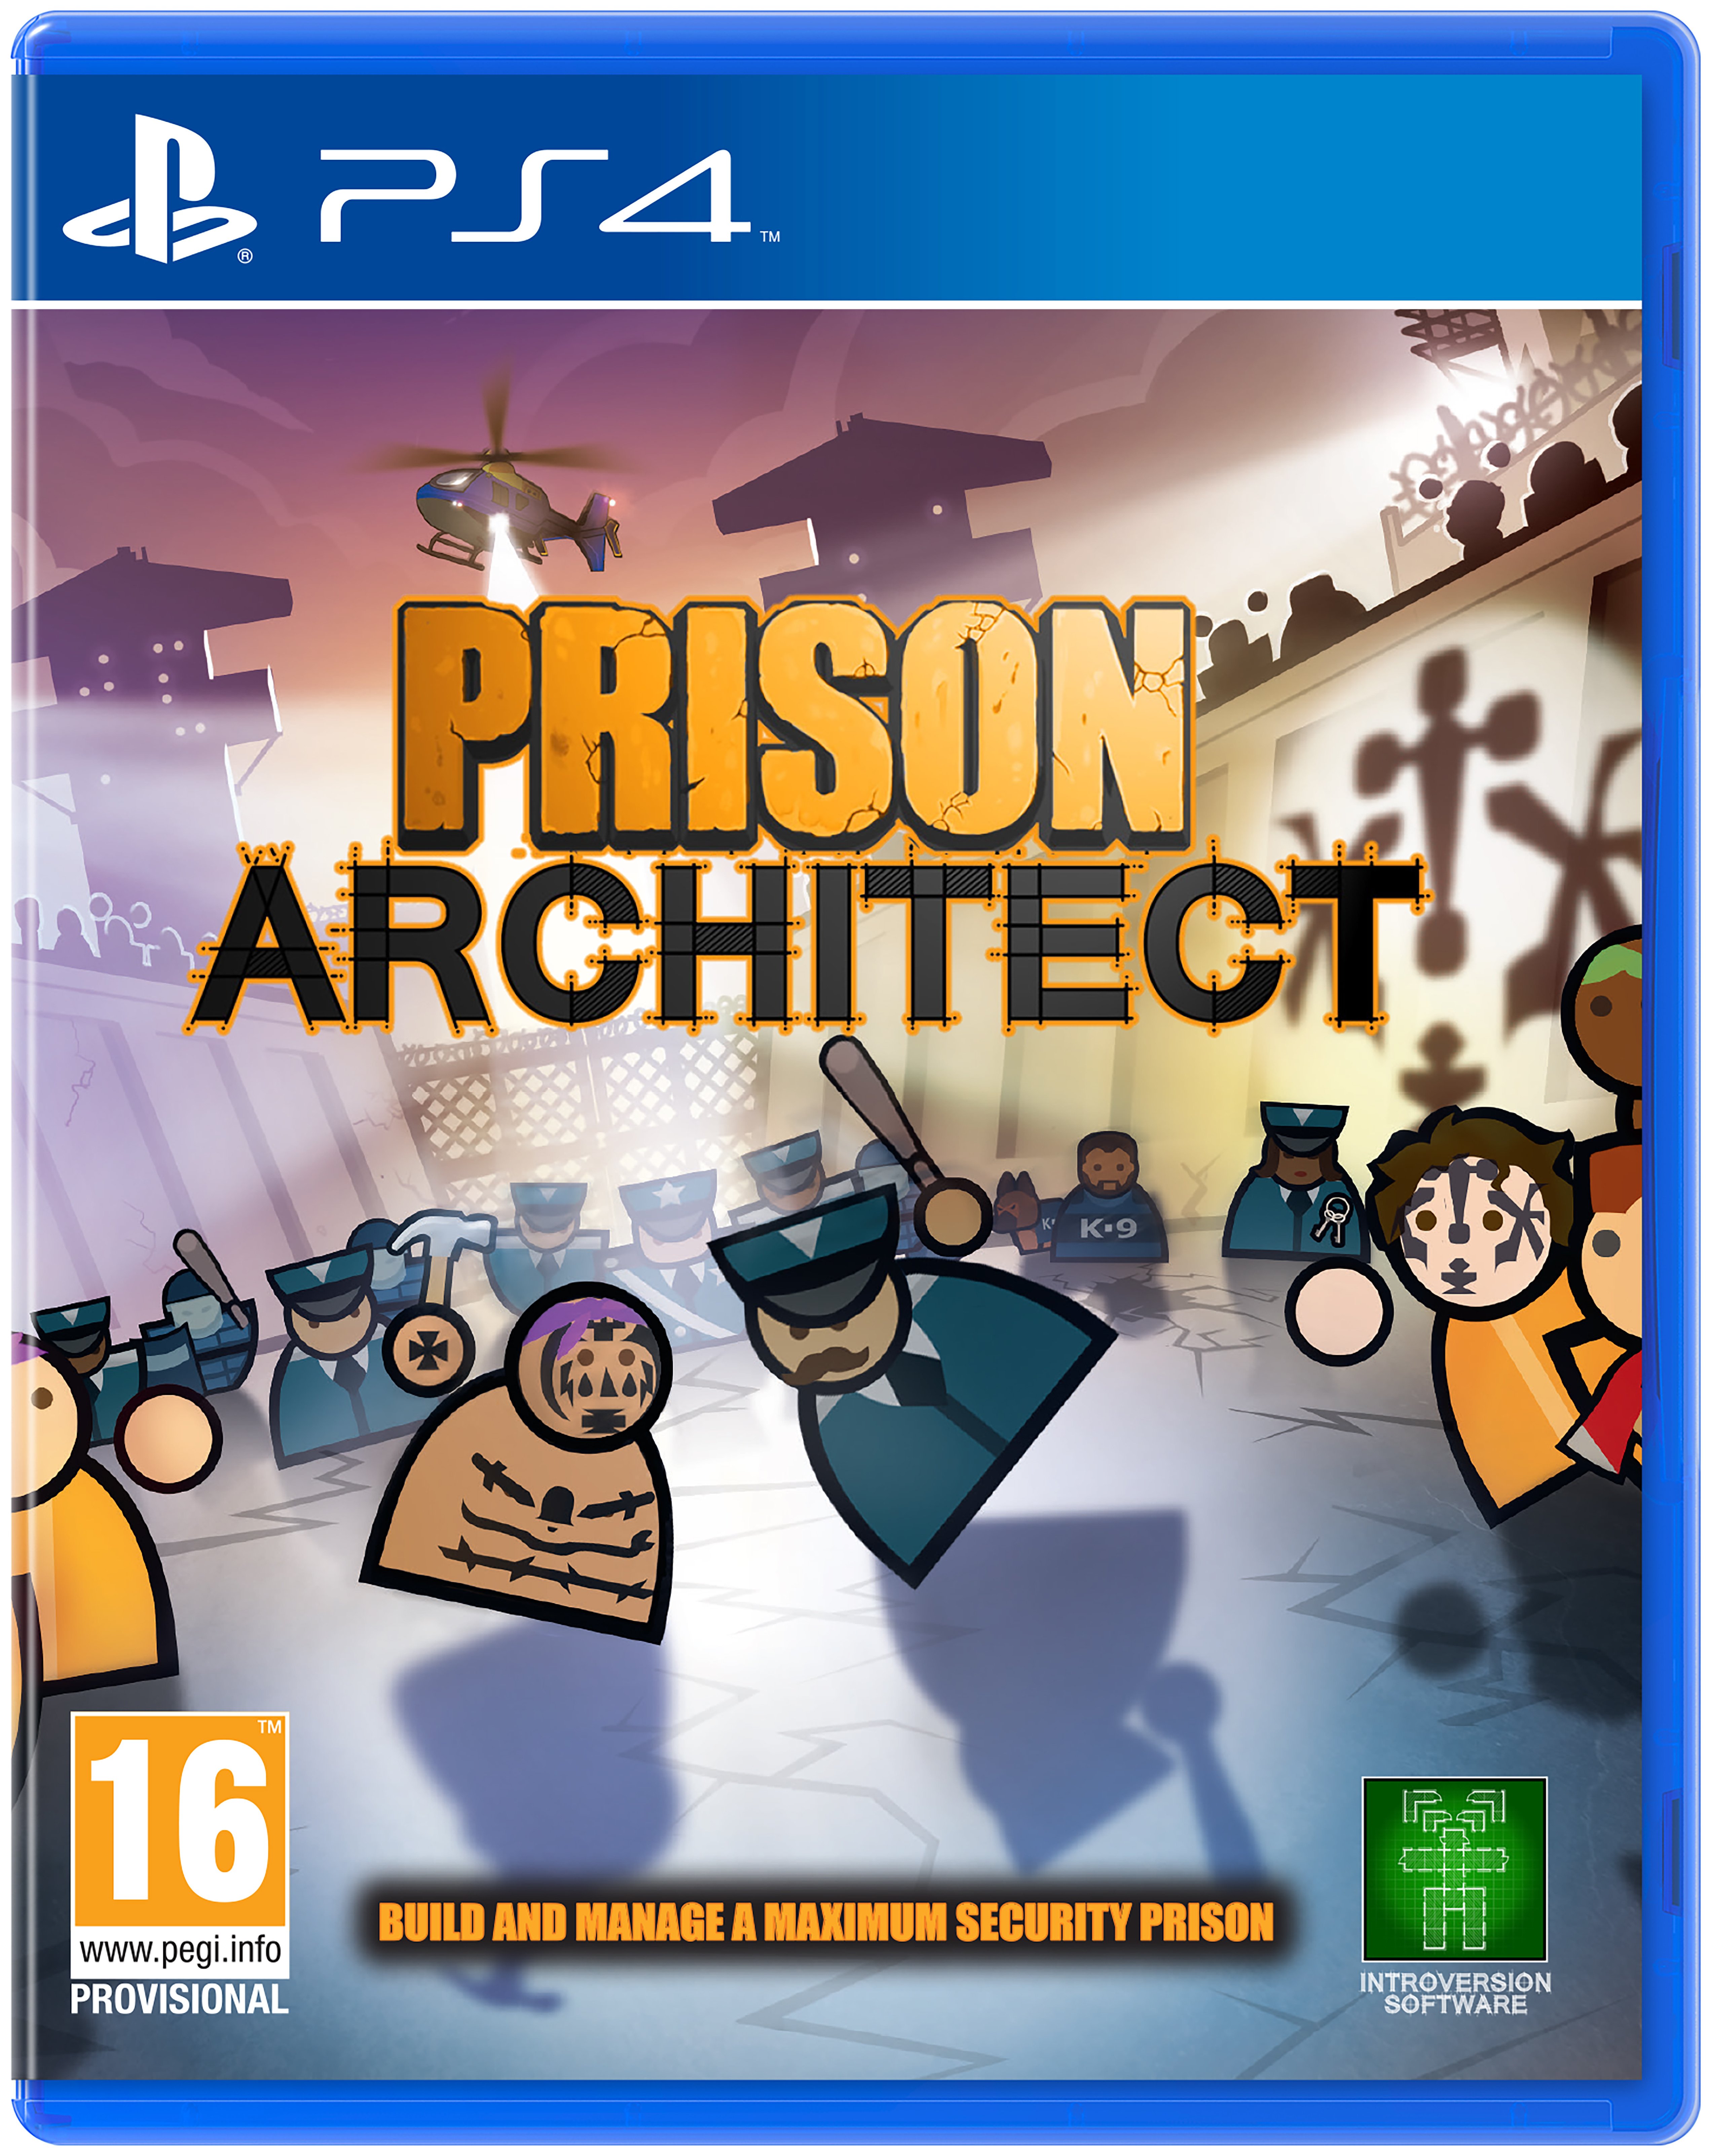 Prison Architect PS4 Game